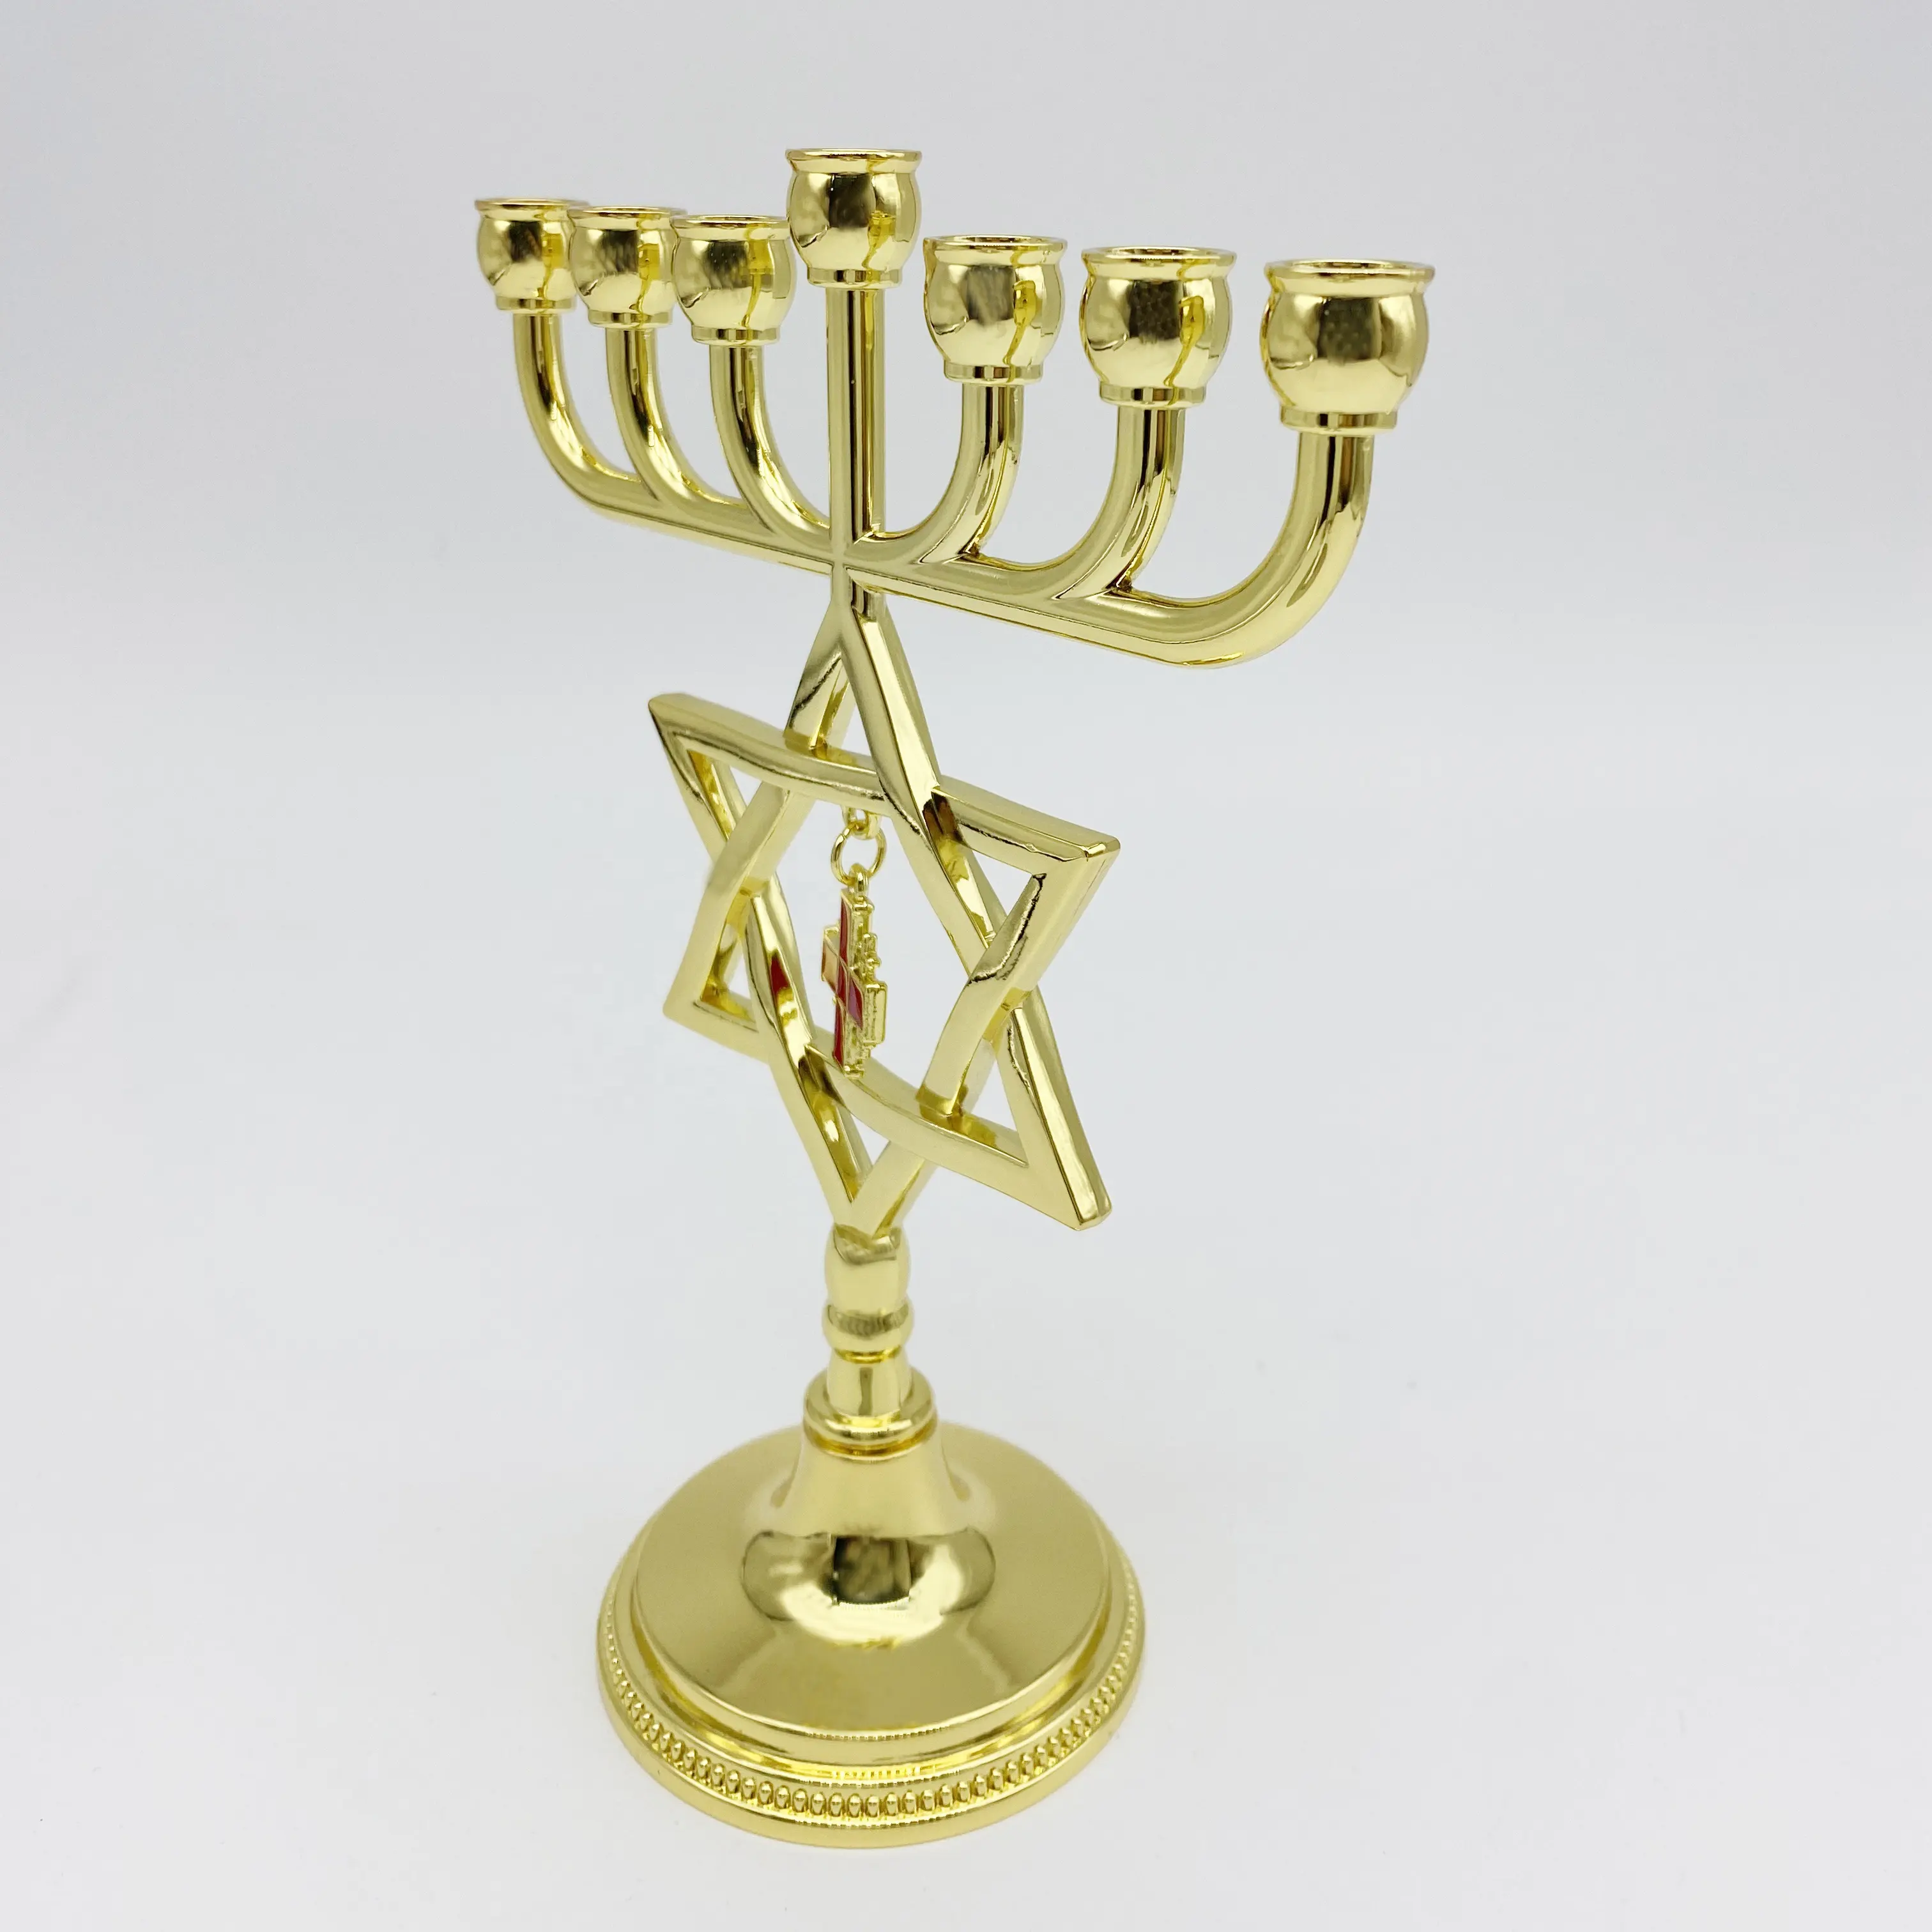 Emas Judaica Bintang David Menorah dengan Yerusalem salib pesona